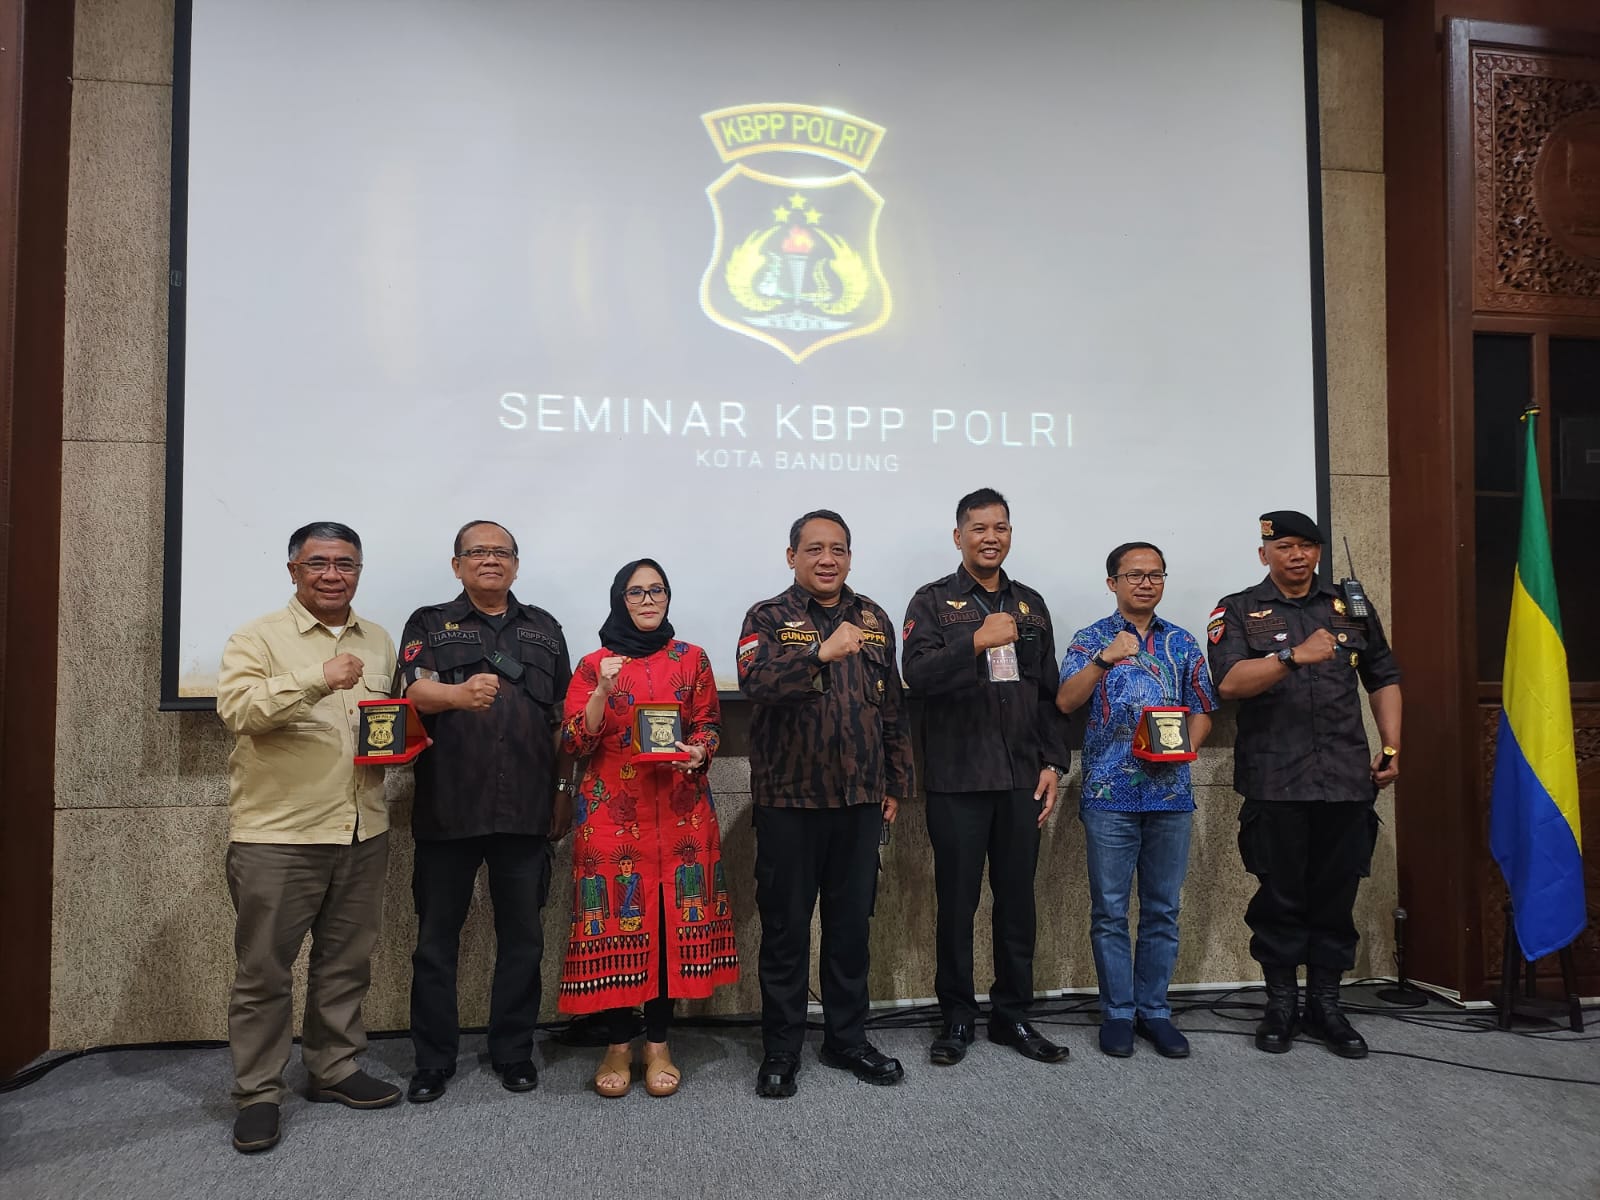 Galeri Seminar KBPP Polri Kota Bandung